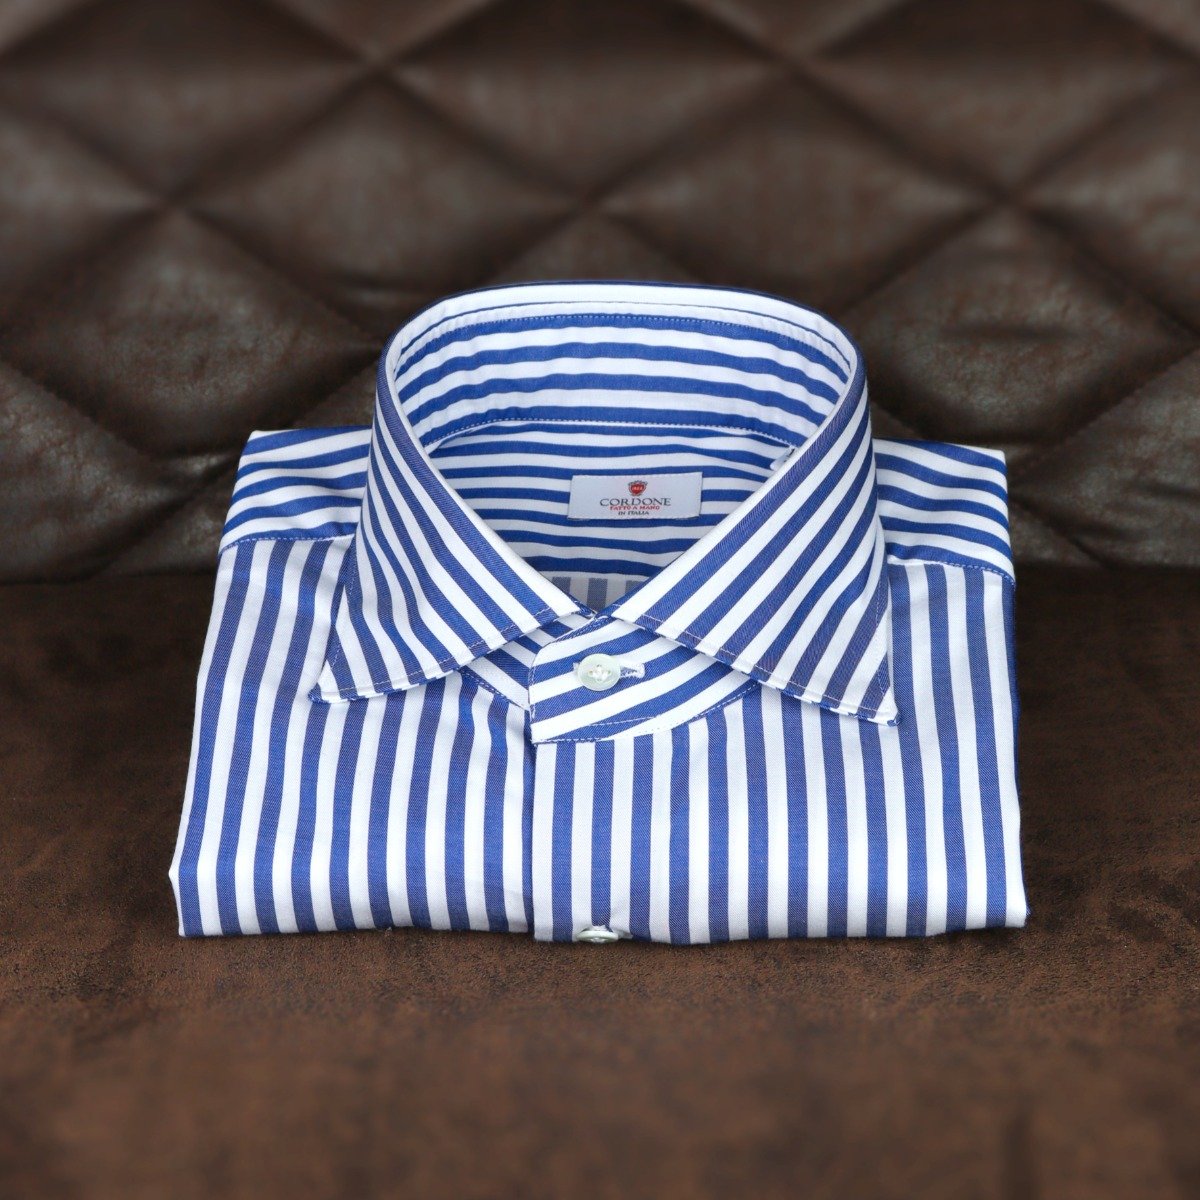 Blue striped dress shirt - top 5 men's dress shirts